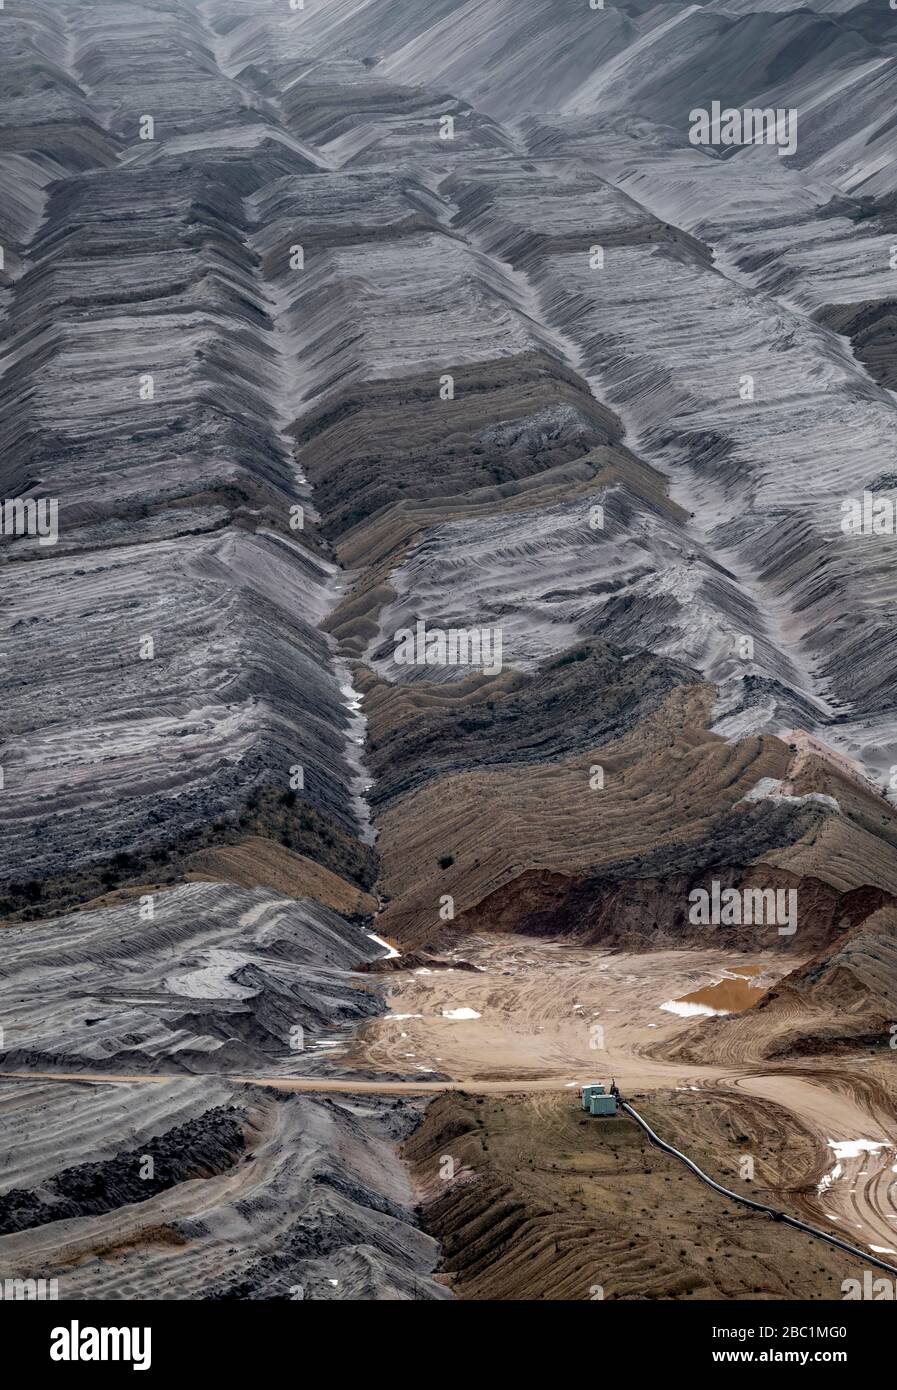 Germania, Renania settentrionale-Vestfalia, Hambach, vista ad alto angolo del sovraccarico della miniera di lignite a cielo aperto Foto Stock